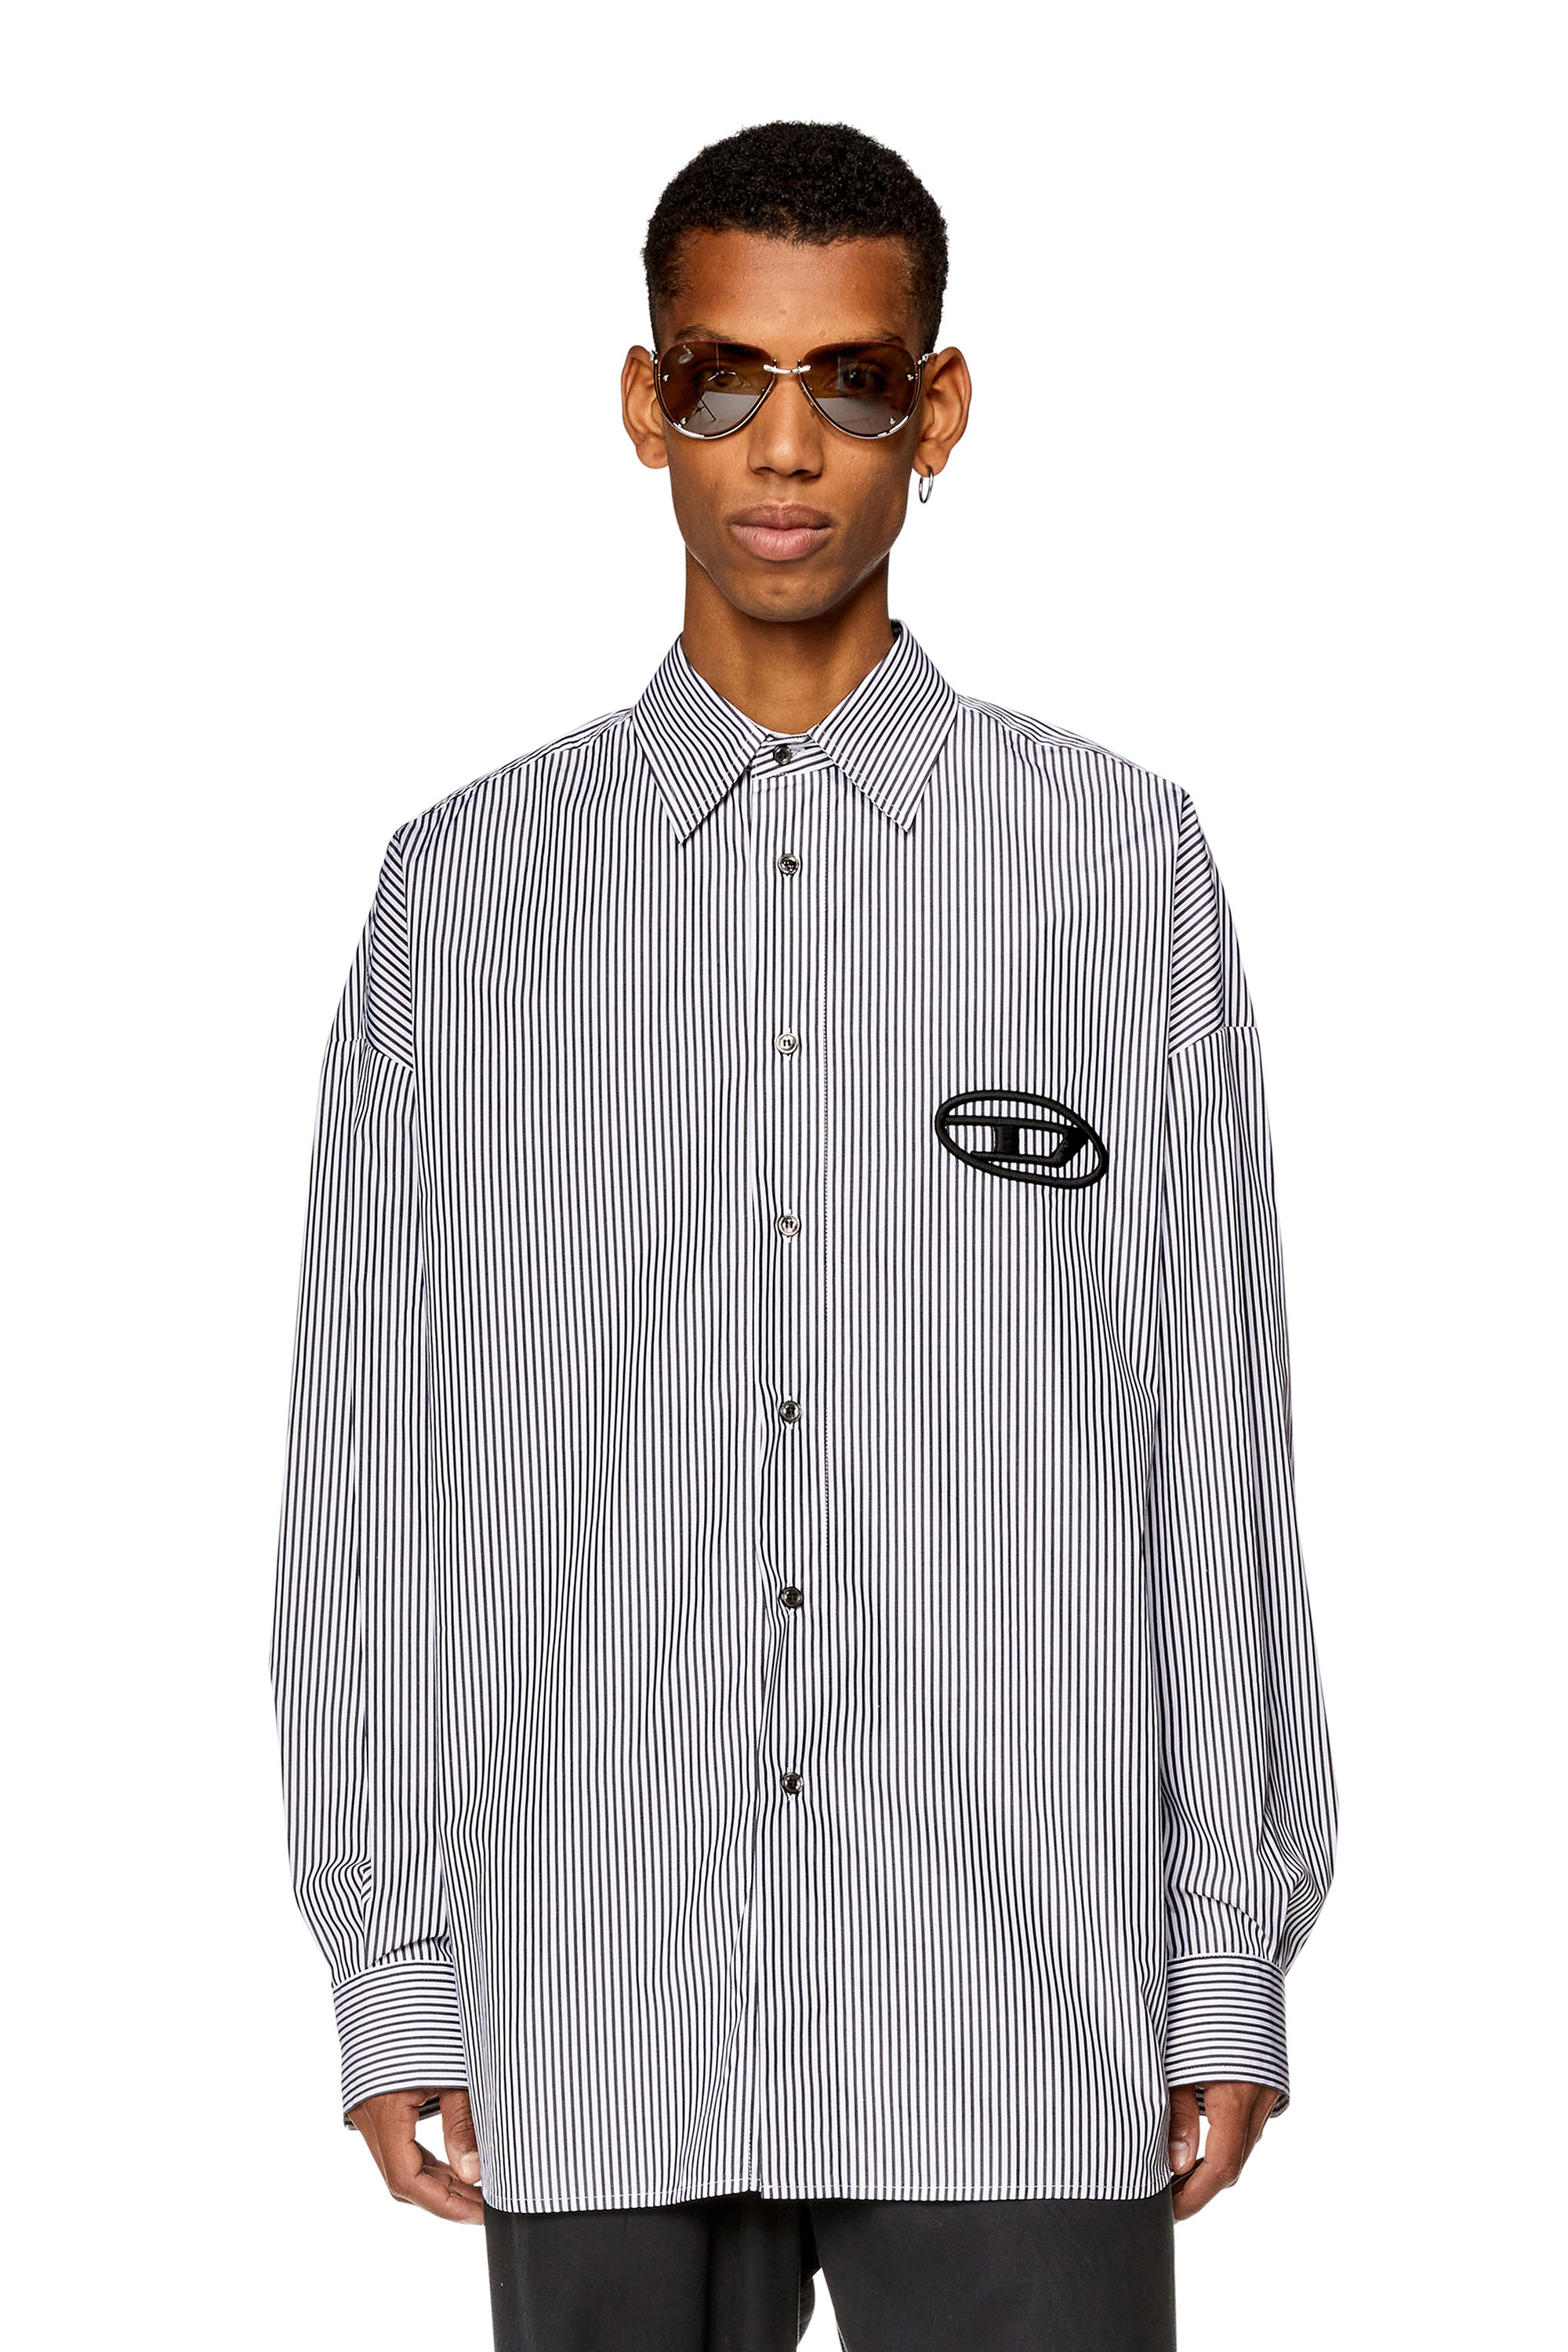 Diesel - Camisa holgada con logotipo bordado - Camisas - Hombre - Negro